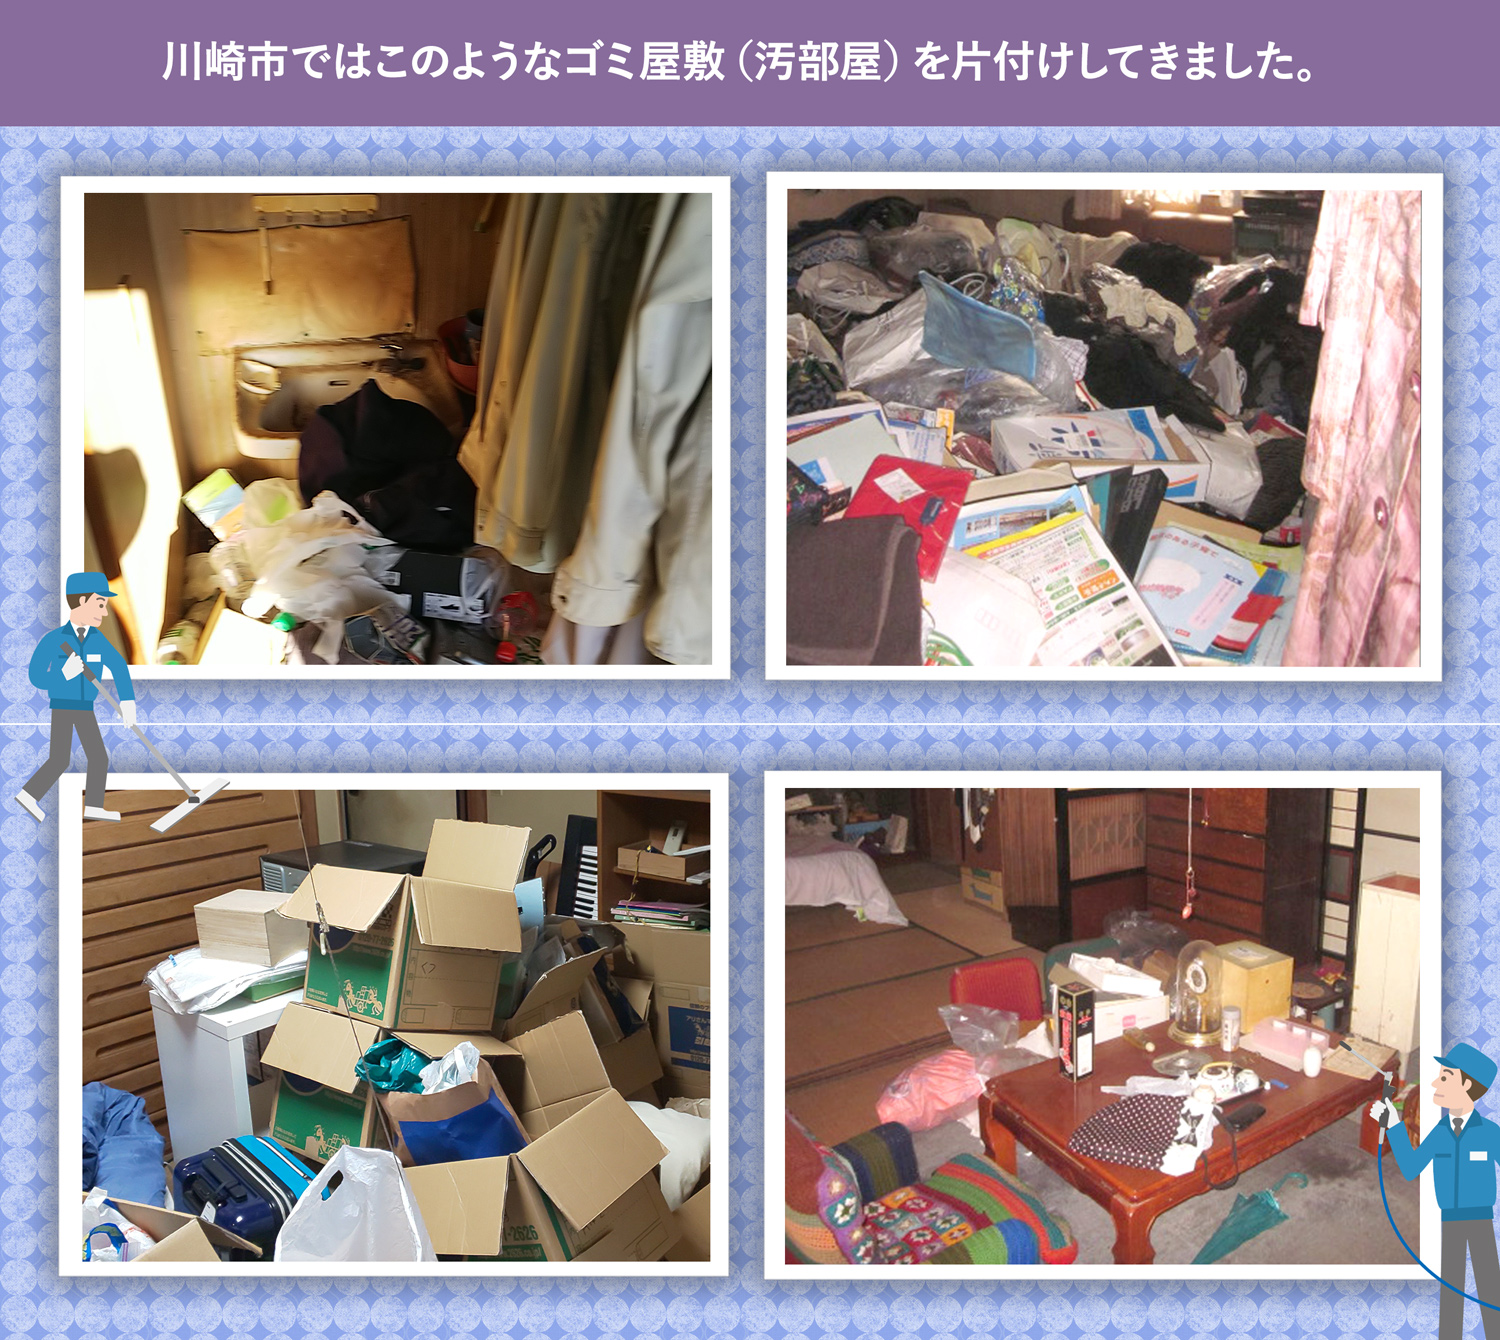 川崎市で行ったで行ったごみ屋敷・汚部屋の片付けの一例